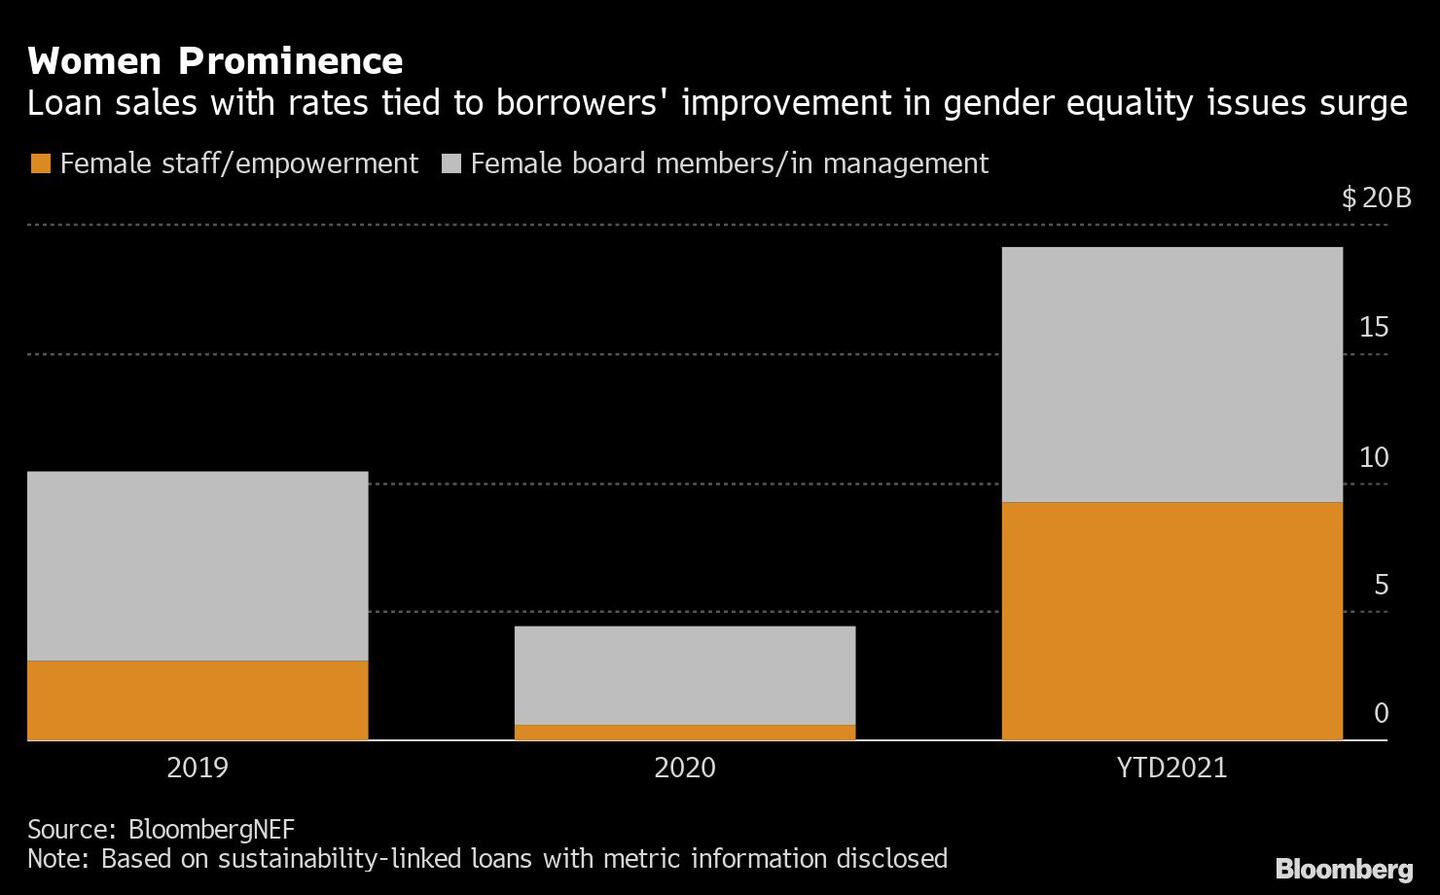 Aumentan las ventas de préstamos con tasas vinculadas a la mejora de los prestatarios en materia de igualdad de género.
dfd